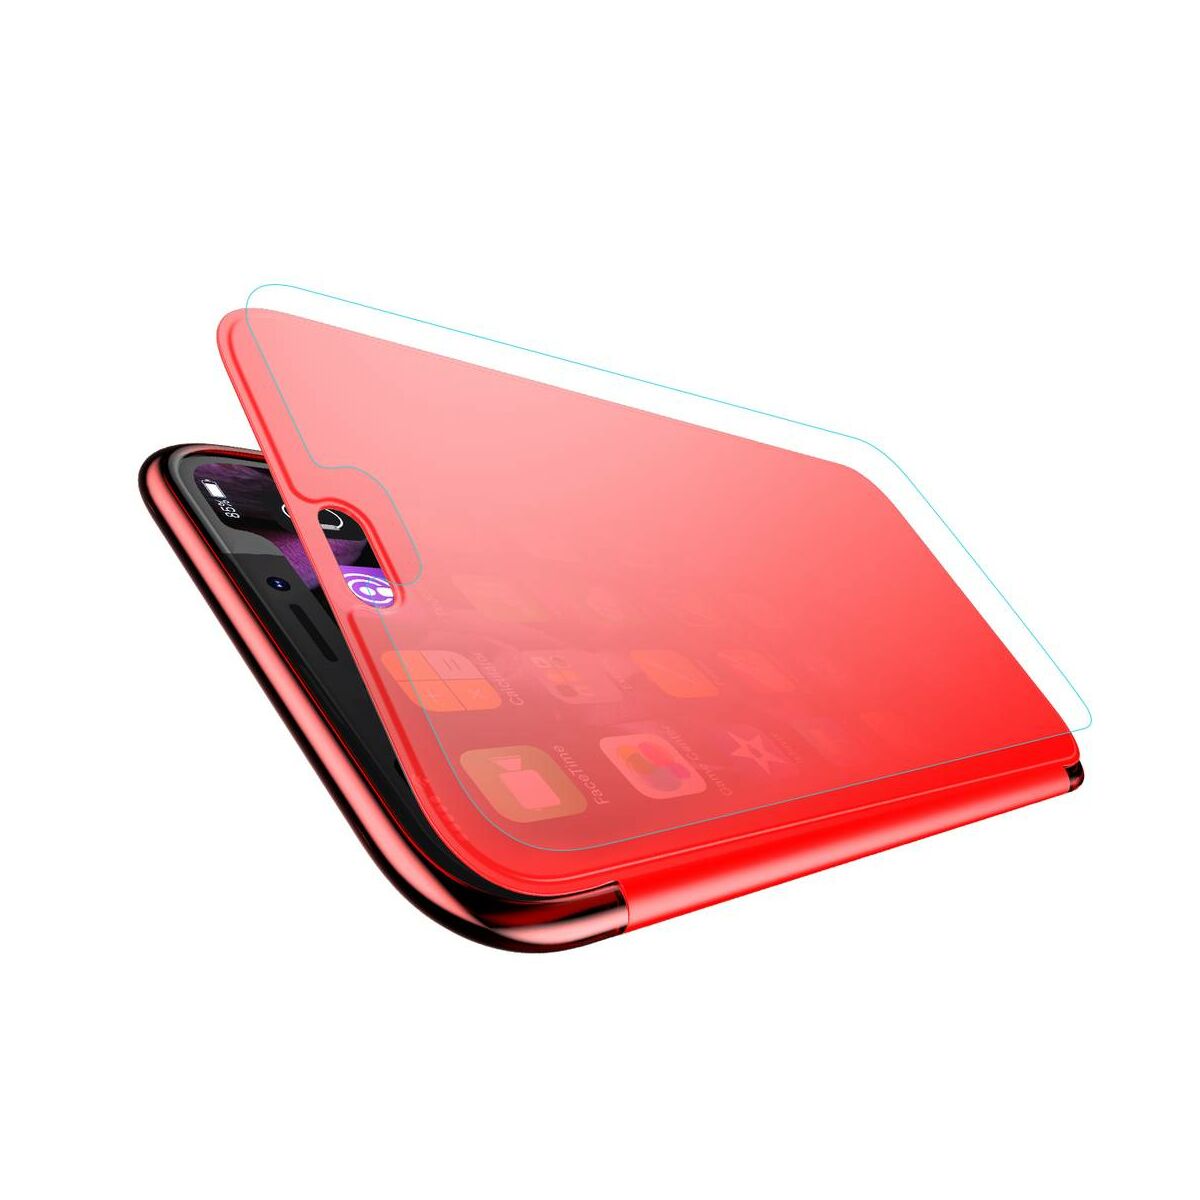 Kép 3/8 - Baseus iPhone XS tok, Touchable kihajtható, érintőfelületű tok, piros (WIAPIPH58-TS09)